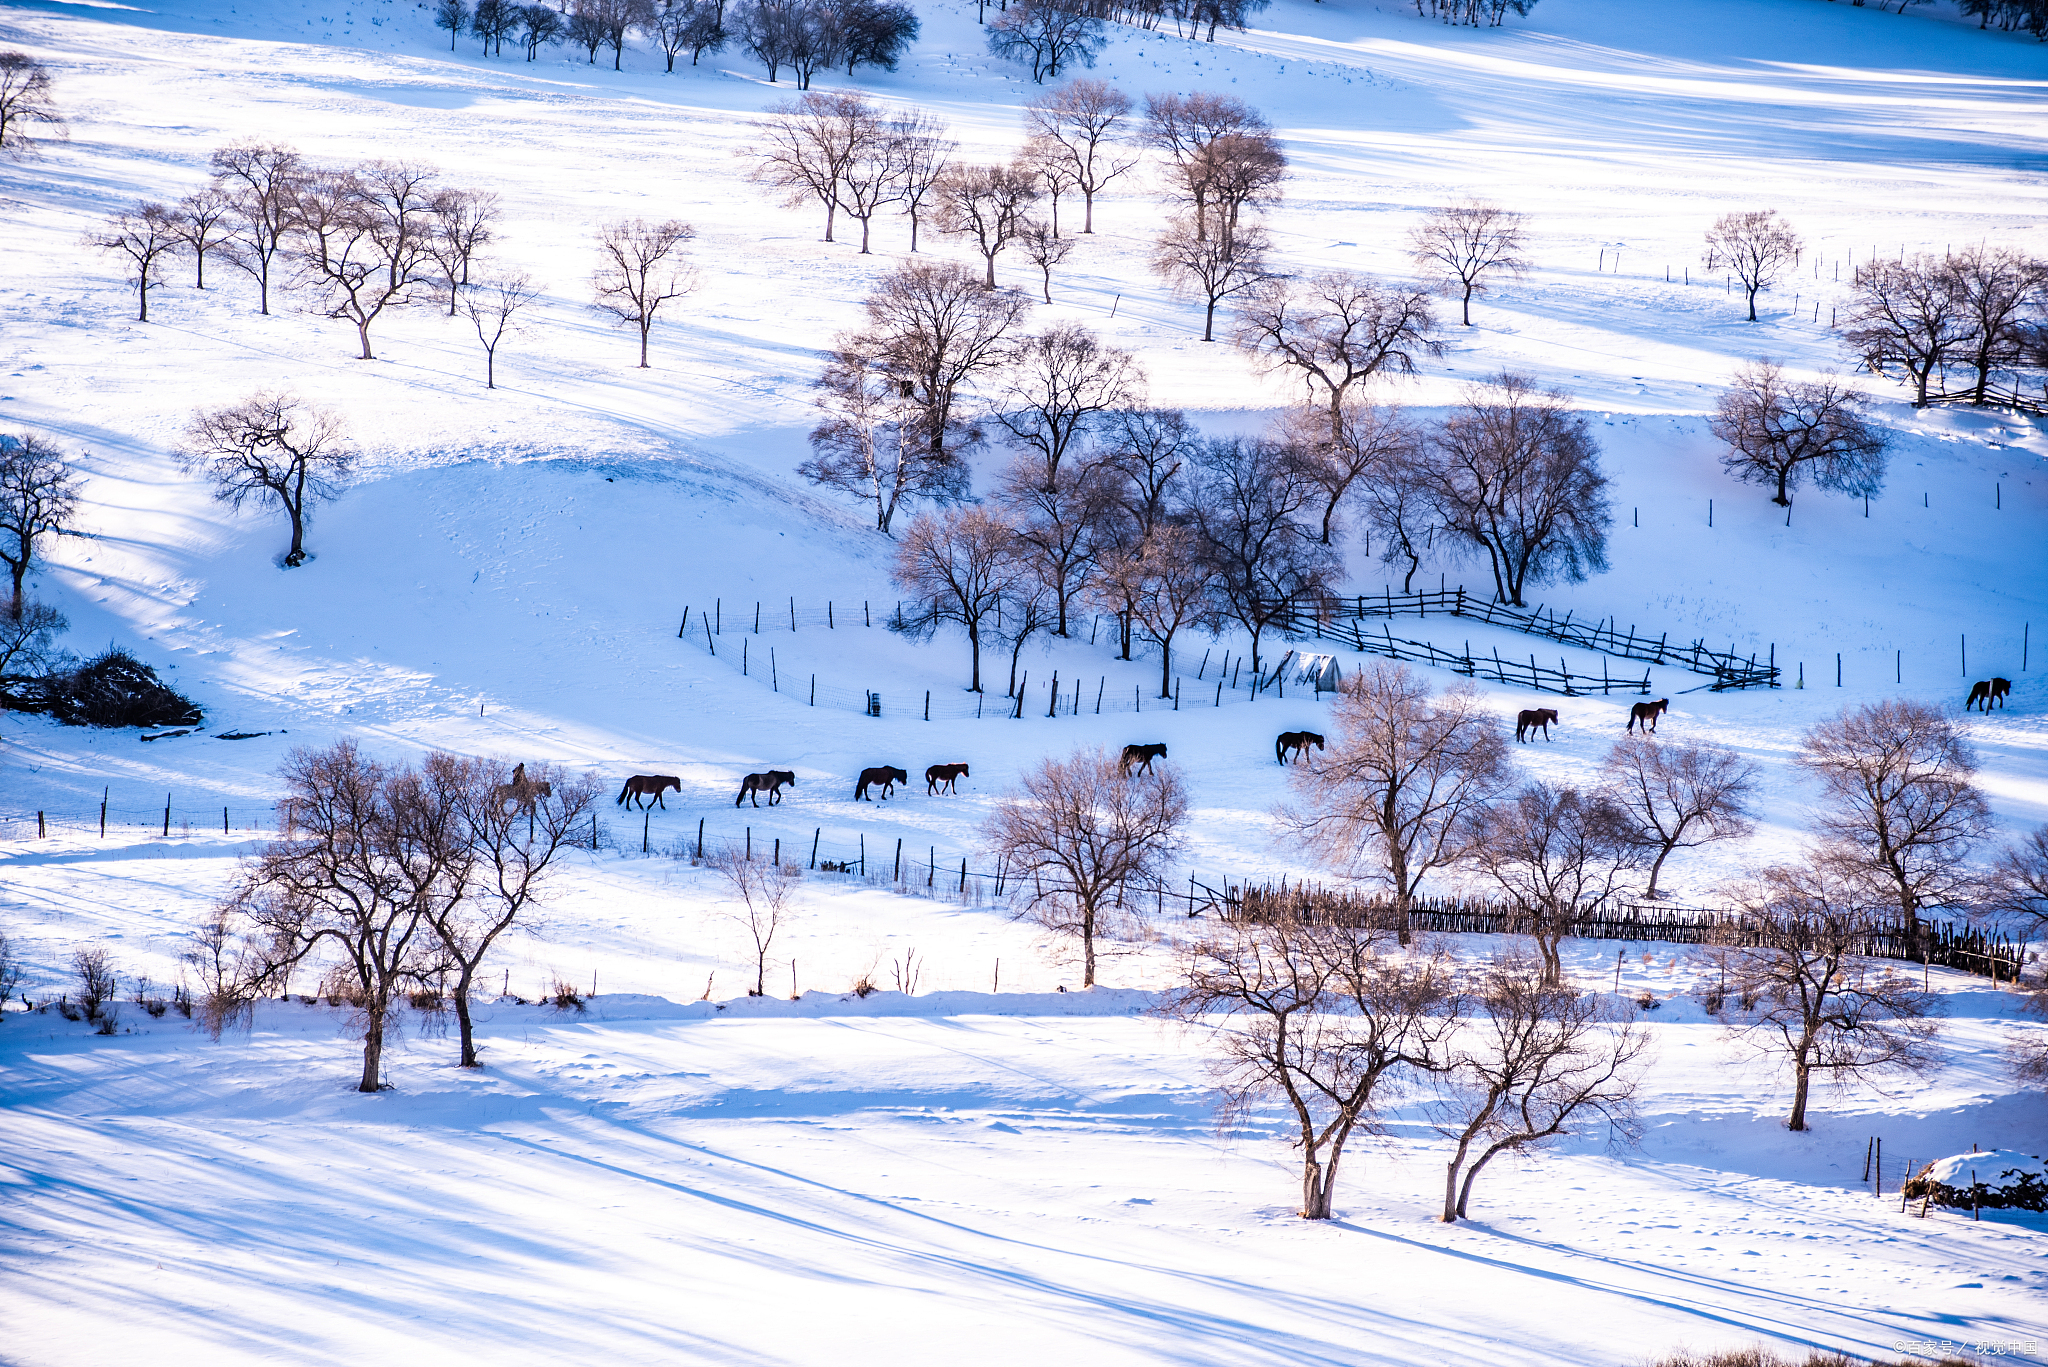 冬季的内蒙古呼伦贝尔,一片银装素裹,美丽的雪景和独特的民俗文化吸引